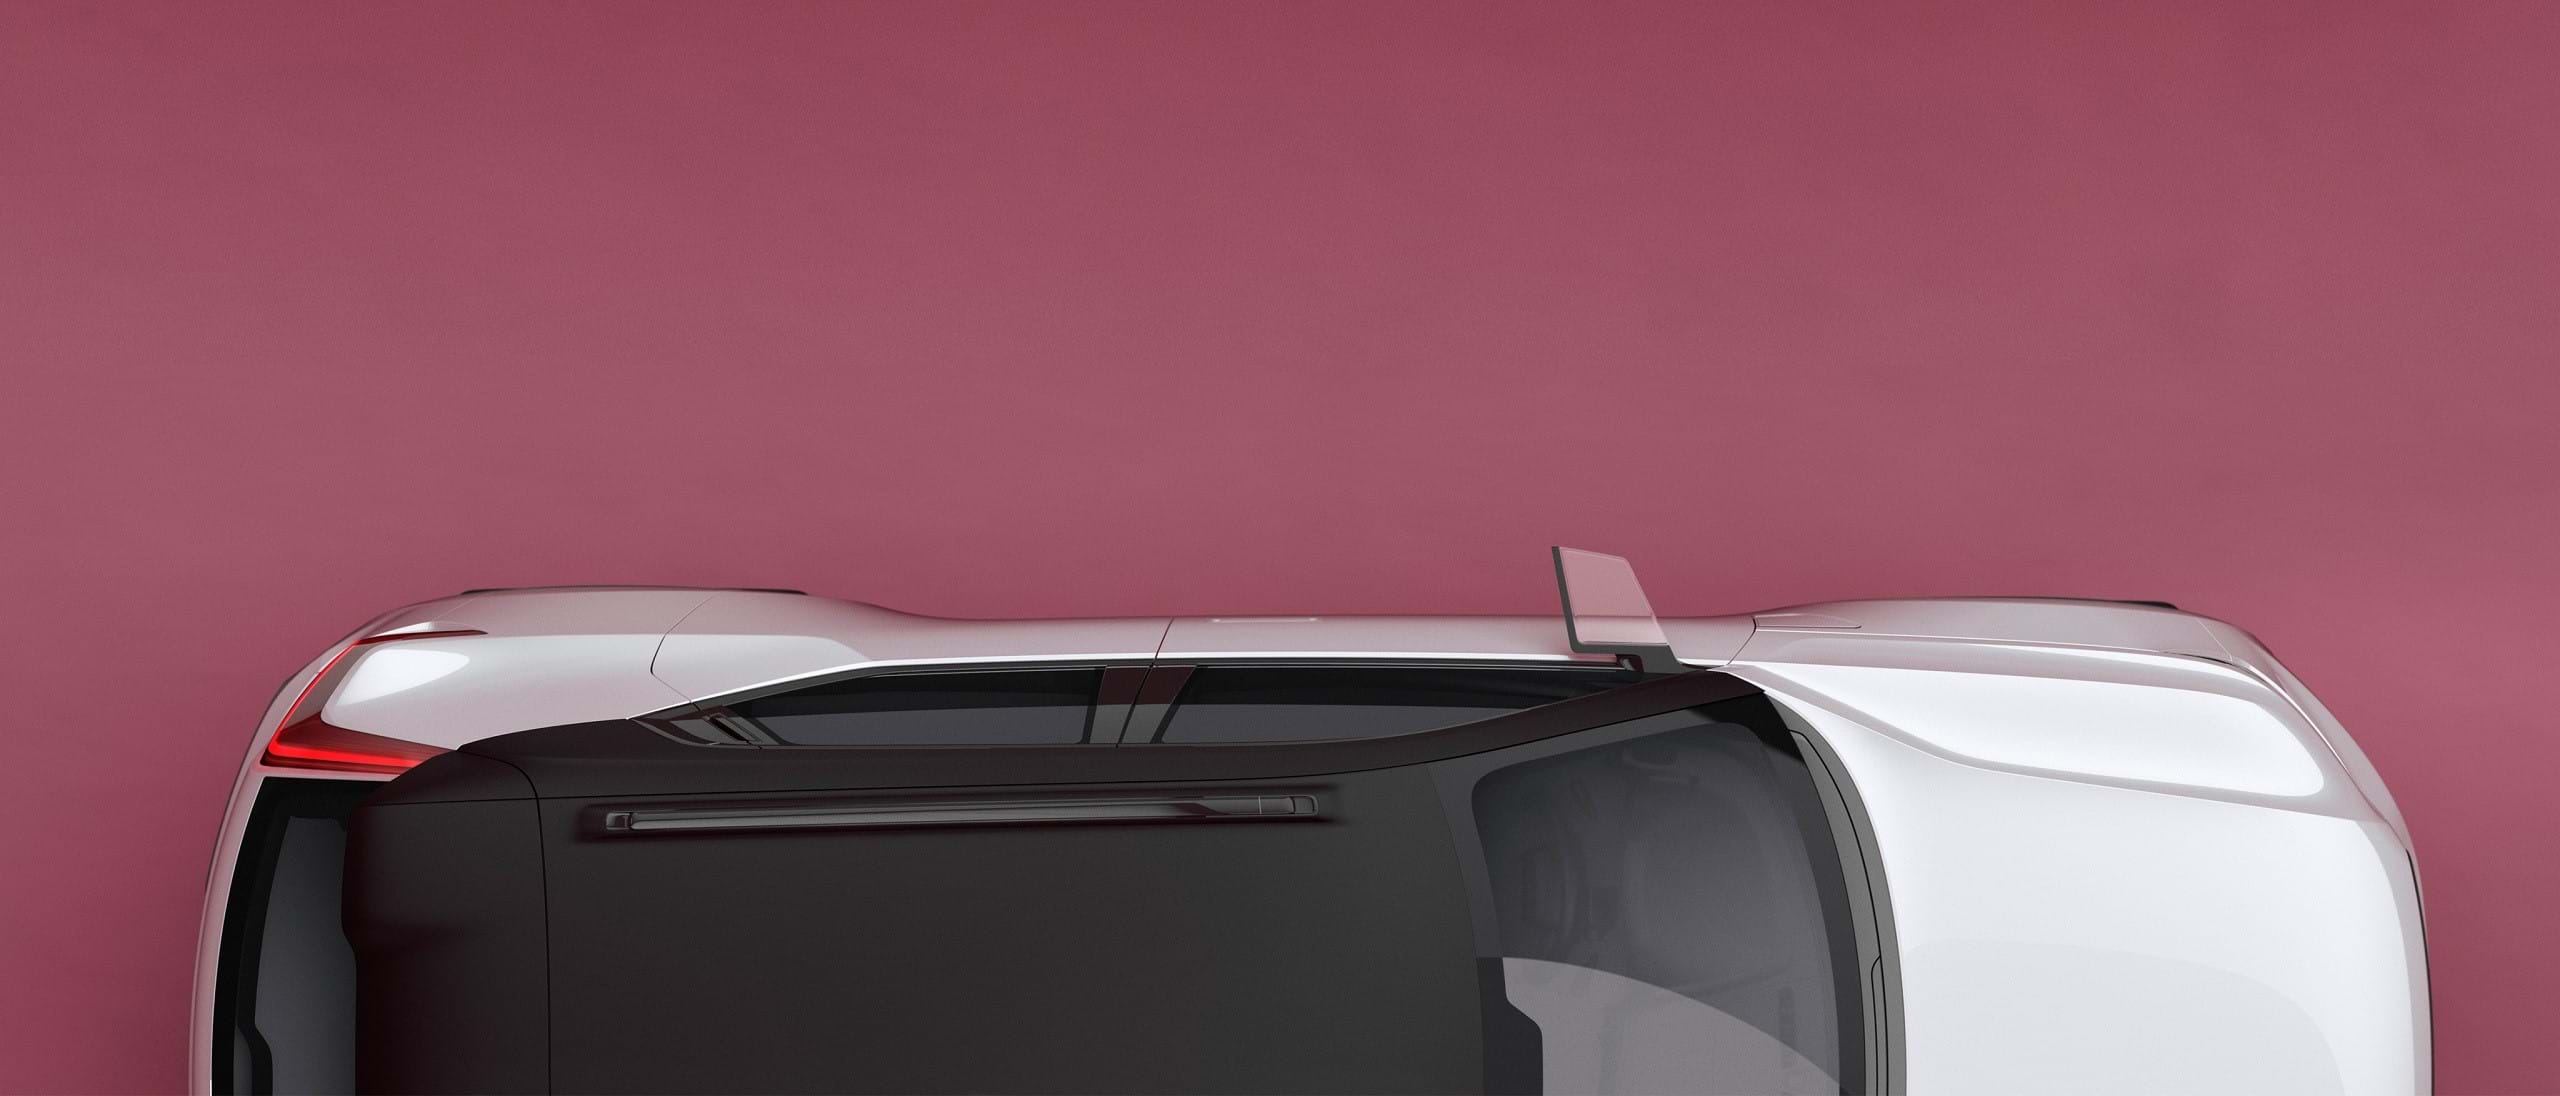 Një makinë e bardhë Volvo Concept 40 me tavanin e zi me kontrast në pamje nga sipër